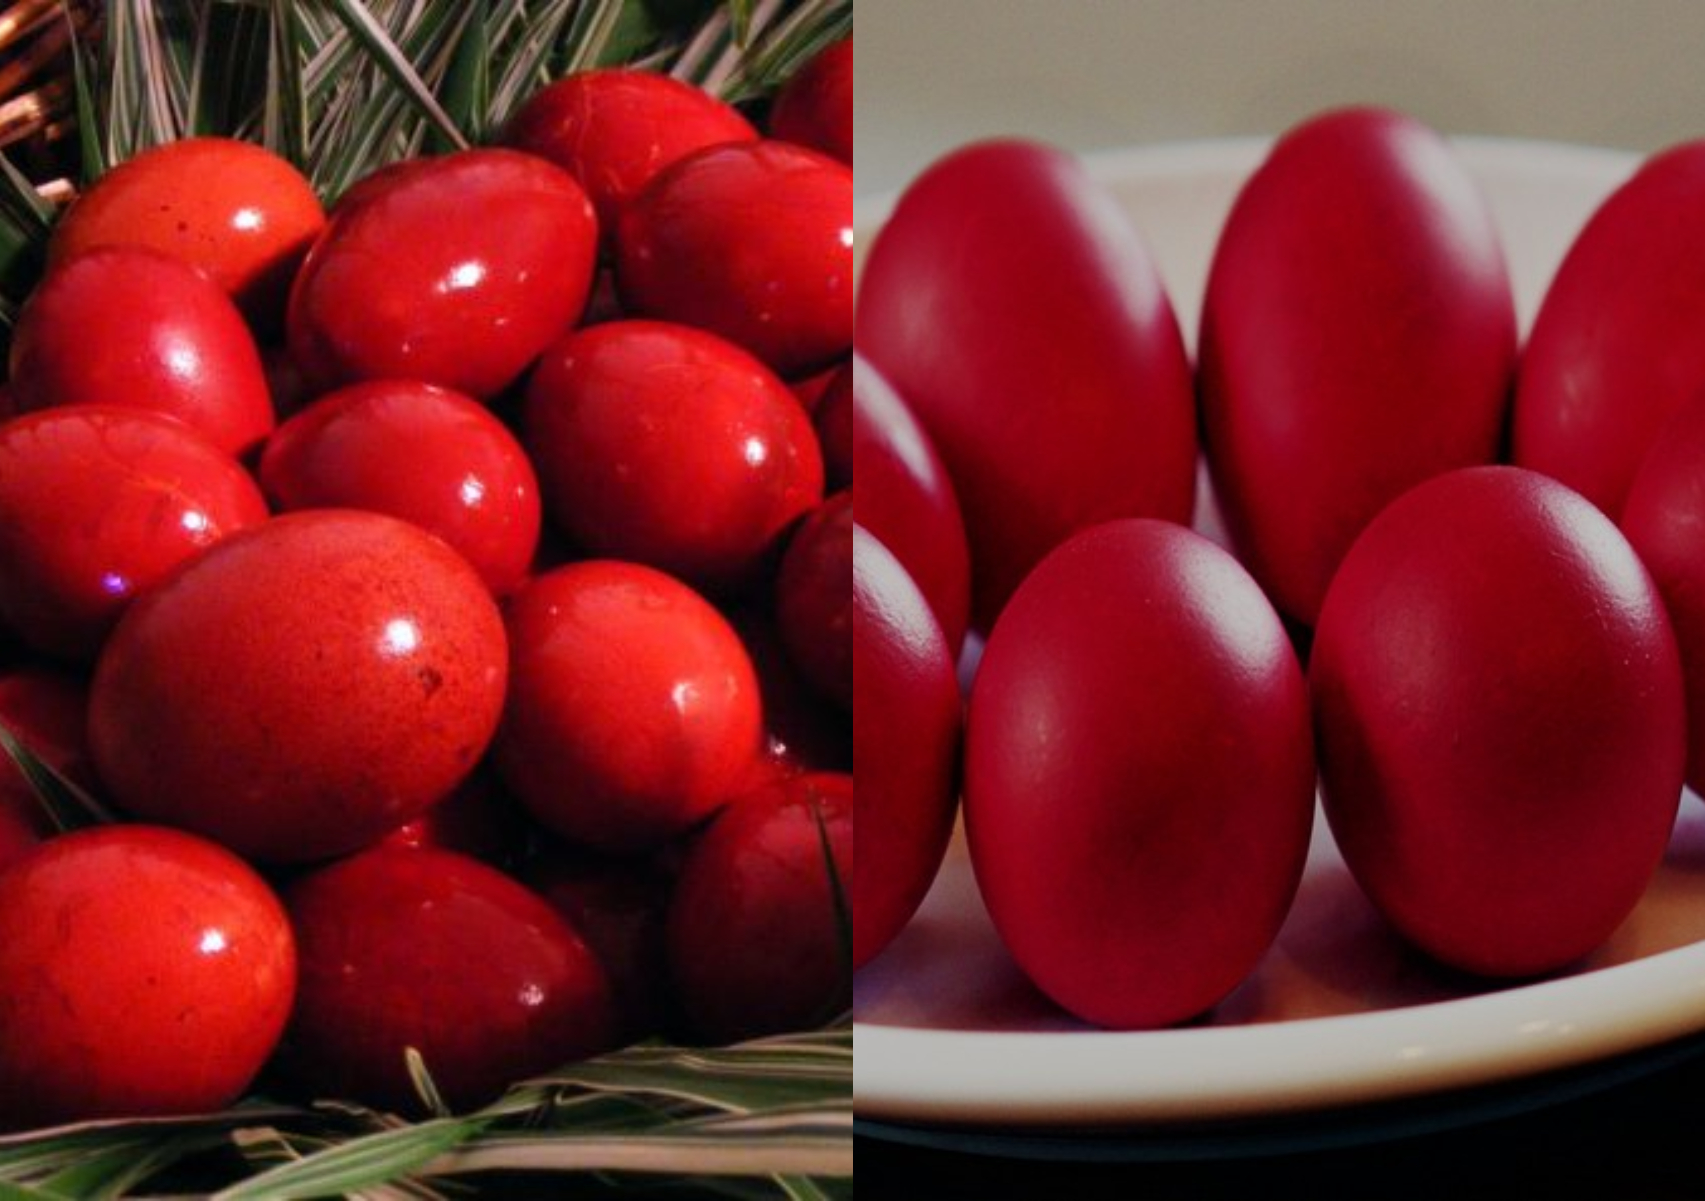 Πασχαλινά Αυγά: Όλα τα μυστικά της γιαγιάς για το τέλειο κατακόκκινο βάψιμο χωρίς σπασίματα